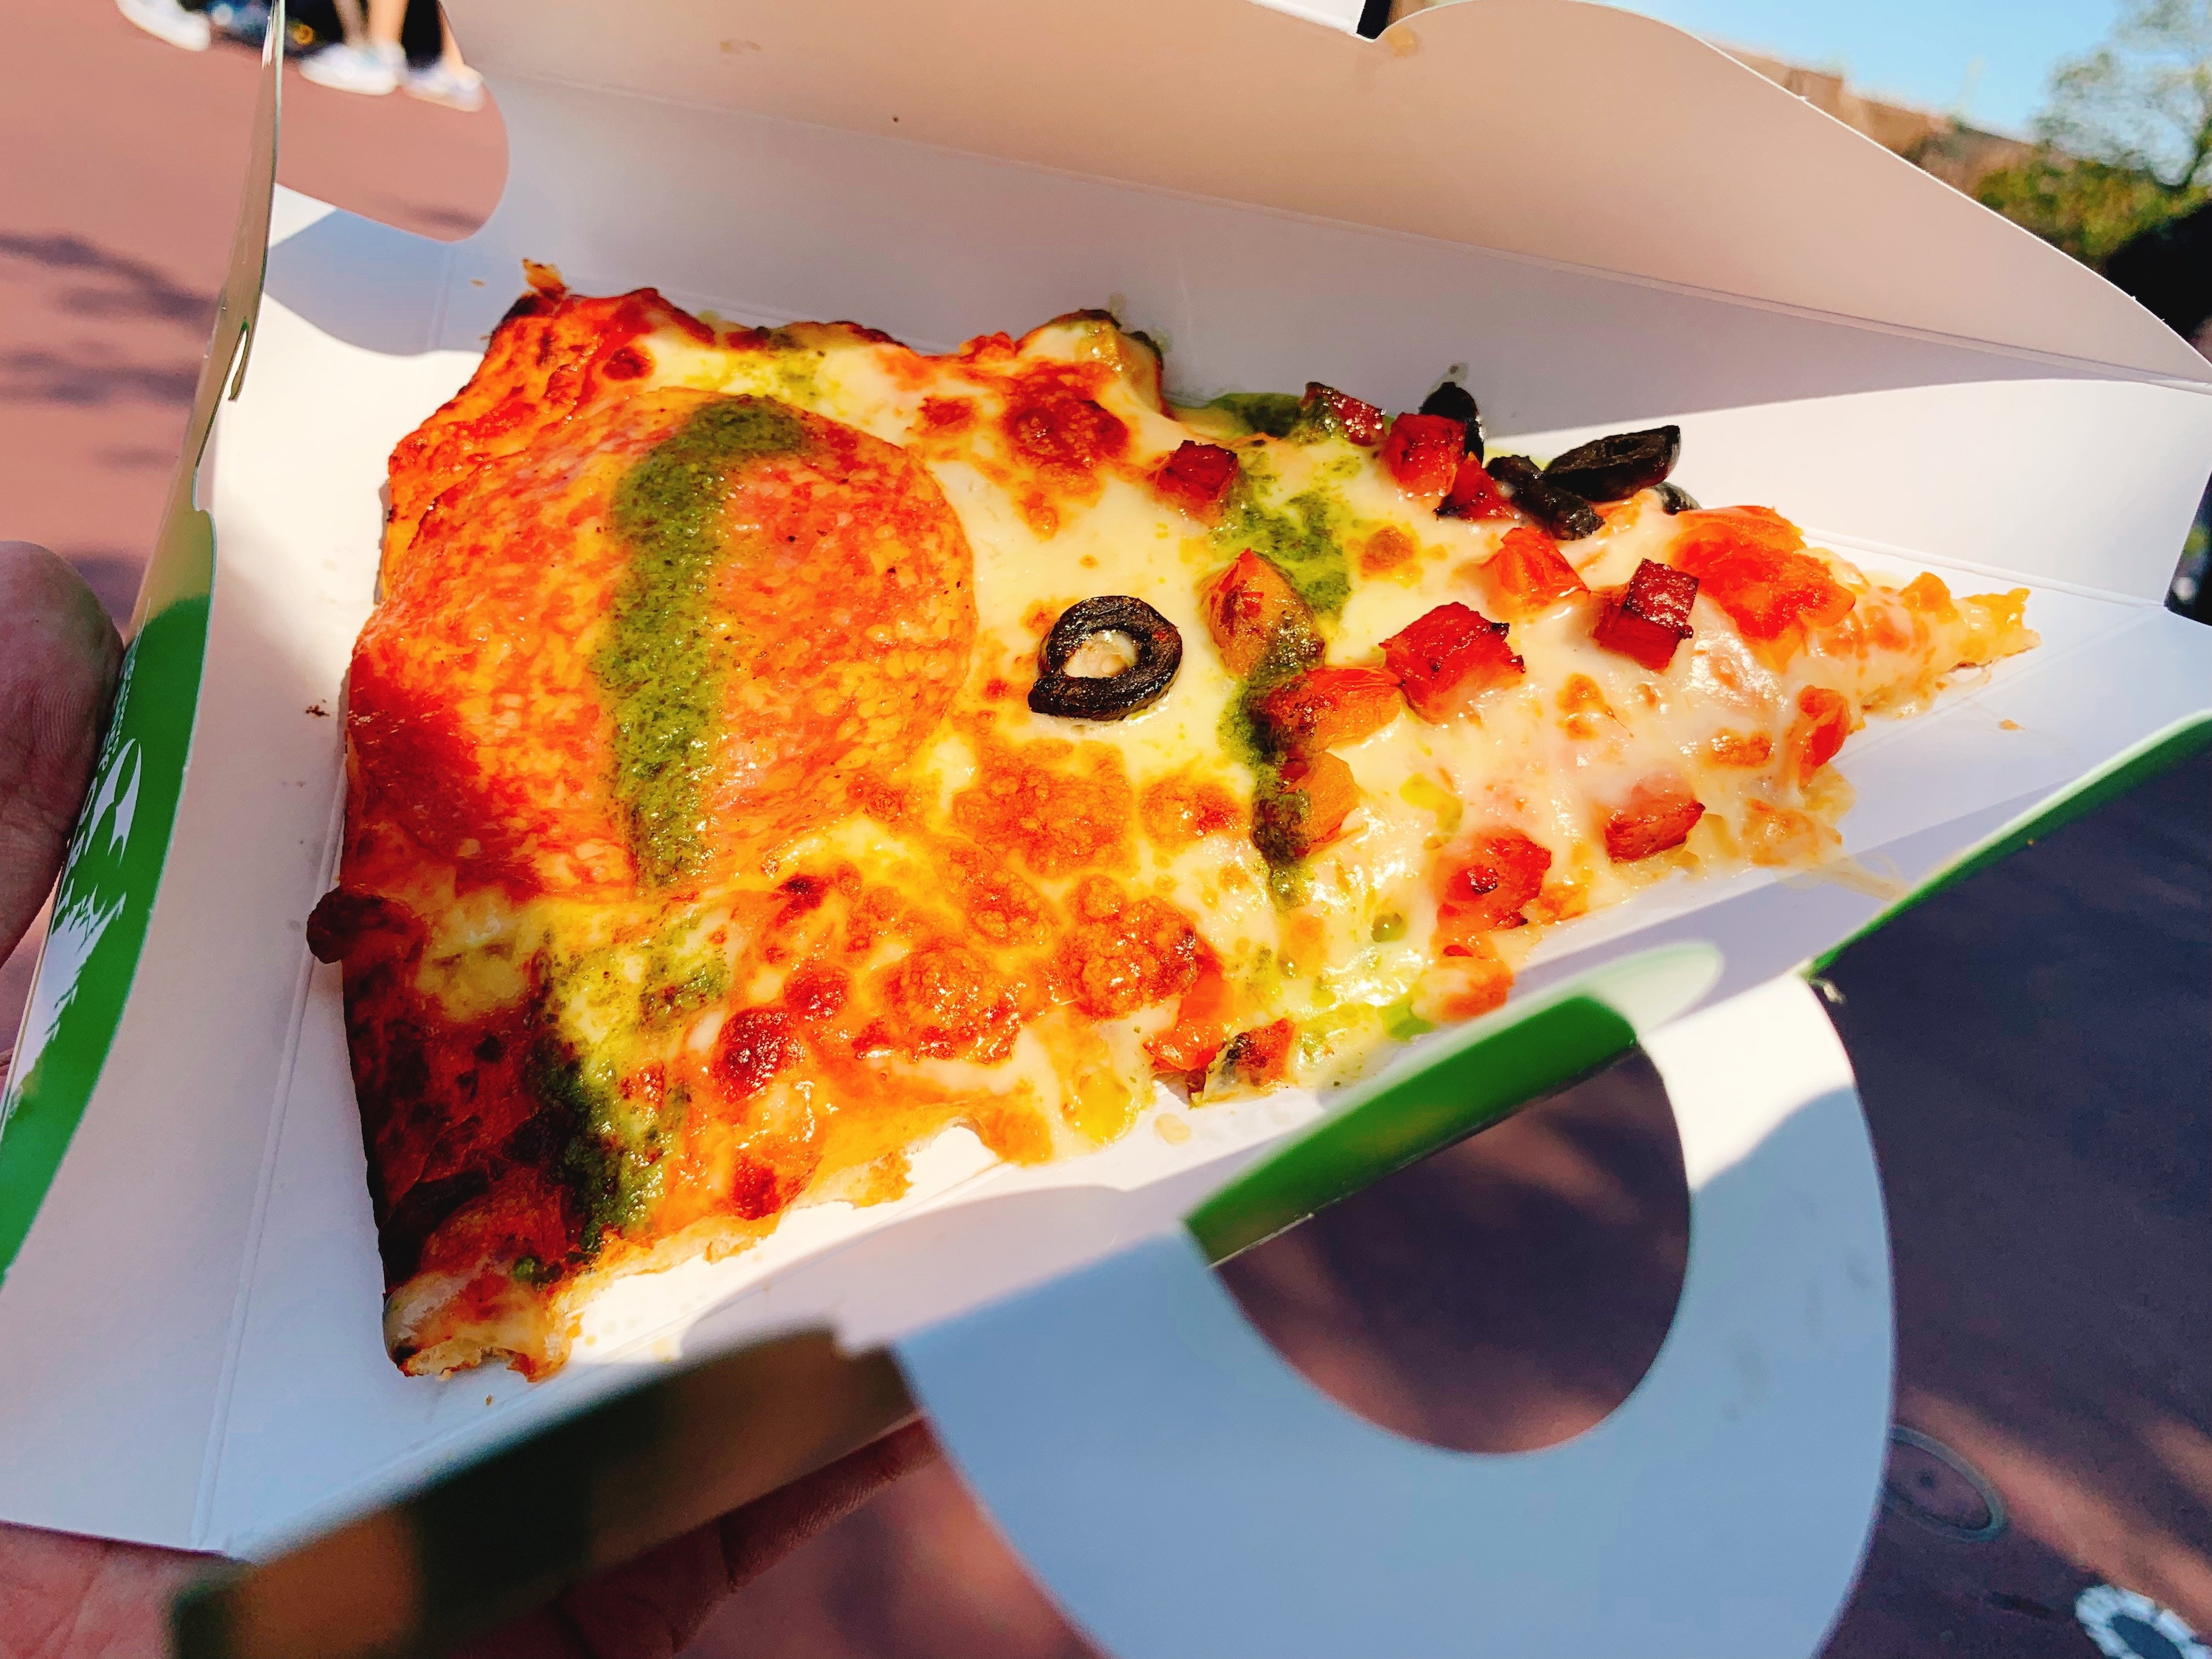 完全網羅 ディズニーランド シーのピザを食べつくそう アツアツピザ全品紹介